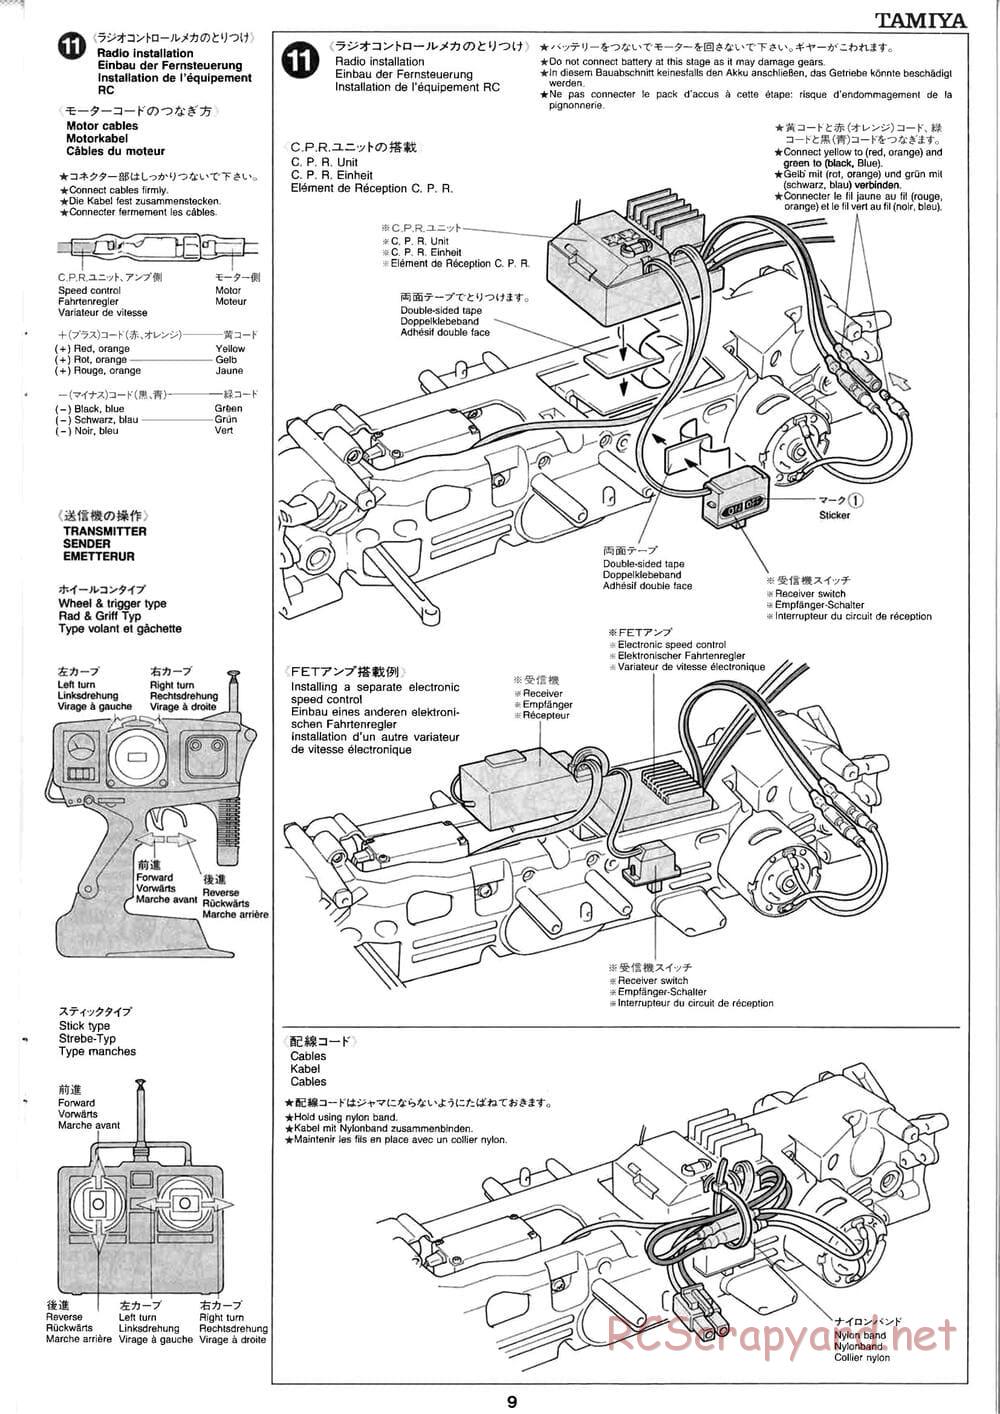 Tamiya - Baja Champ - TL-01B Chassis - Manual - Page 9